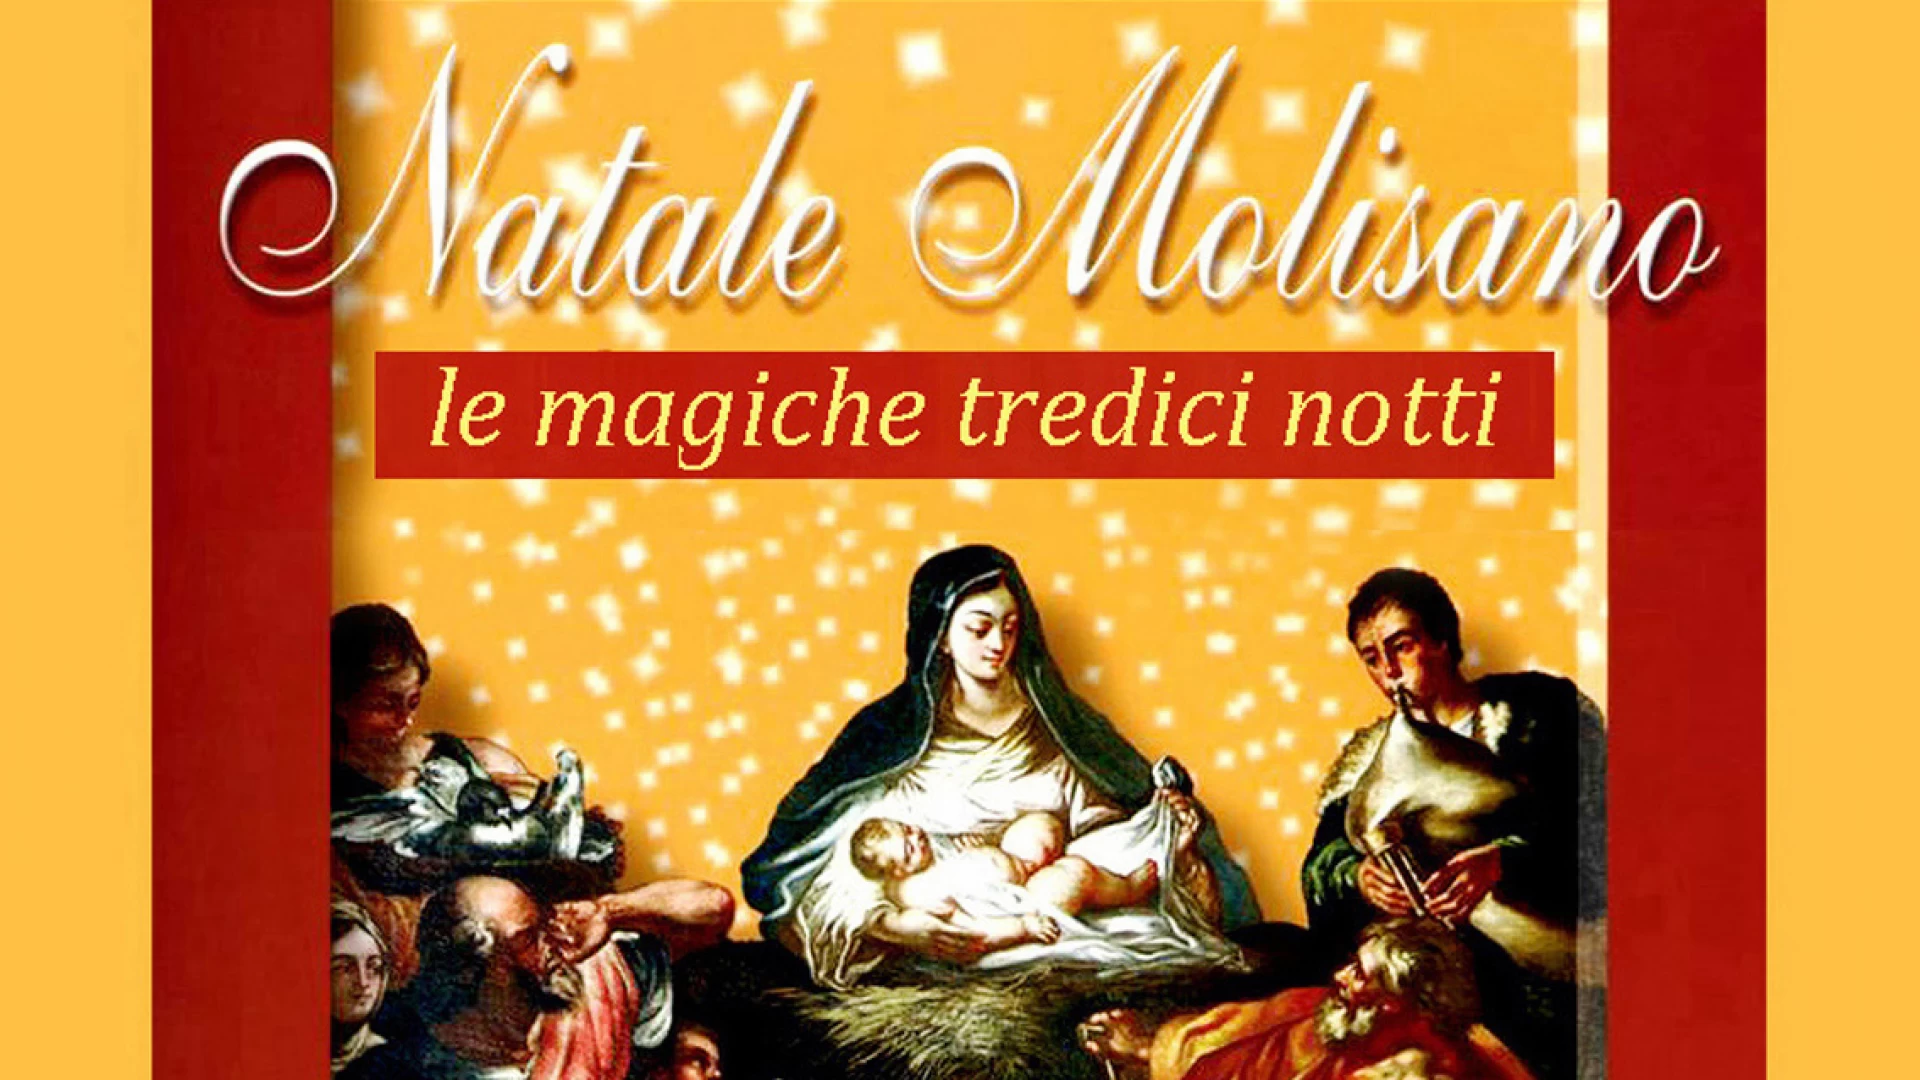 Le magiche tredici note, il Natale Molisano. Domani la conferenza di Mauro Gioielli.